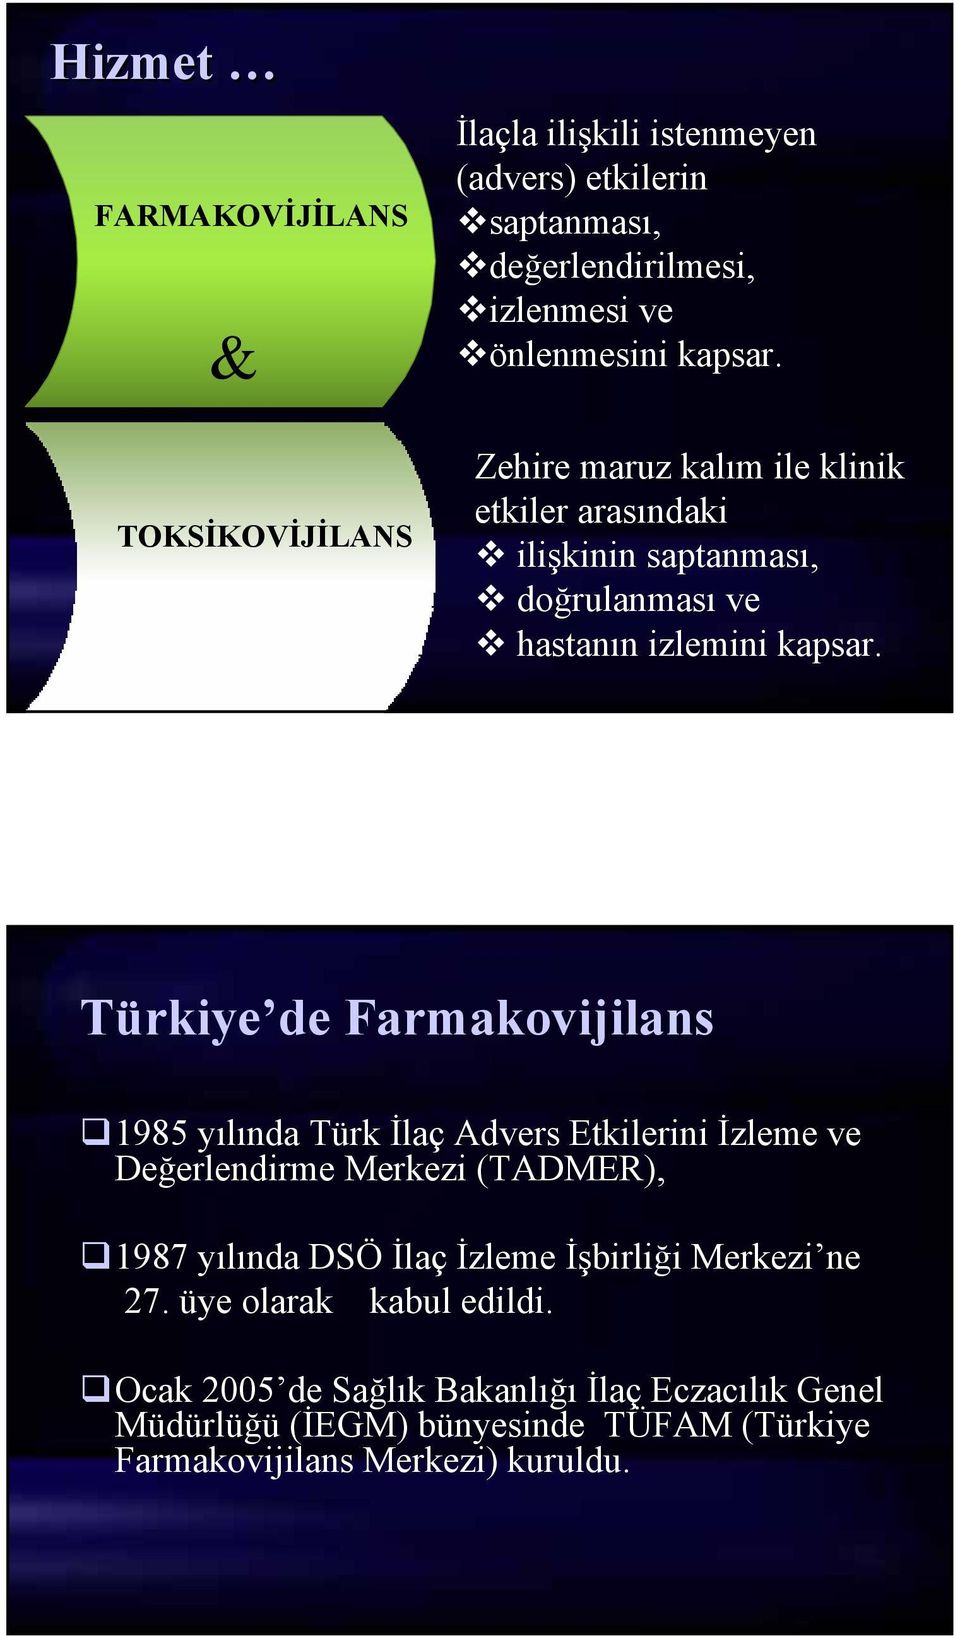 Türkiye de Farmakovijilans 1985 yılında Türk İlaç Advers Etkilerini İzleme ve Değerlendirme Merkezi (TADMER), 1987 yılında DSÖ İlaç İzleme